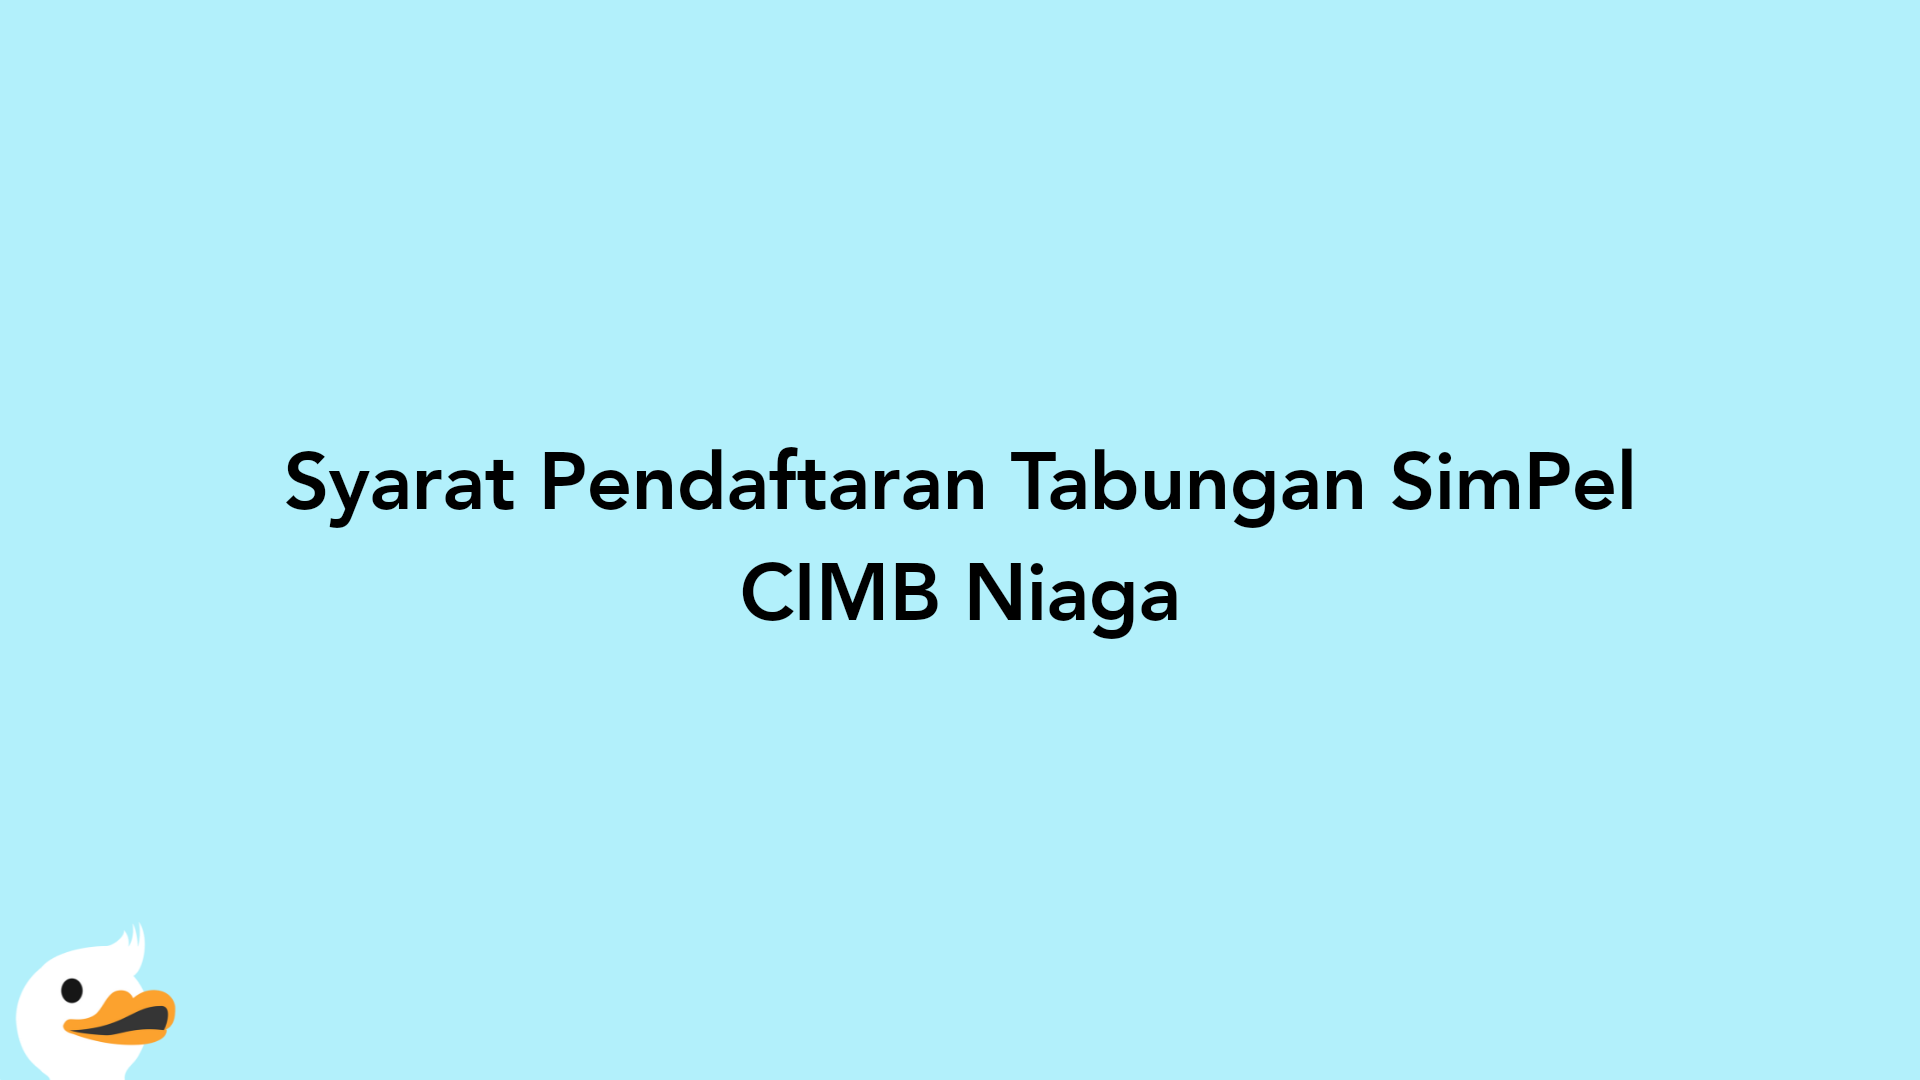 Syarat Pendaftaran Tabungan SimPel CIMB Niaga